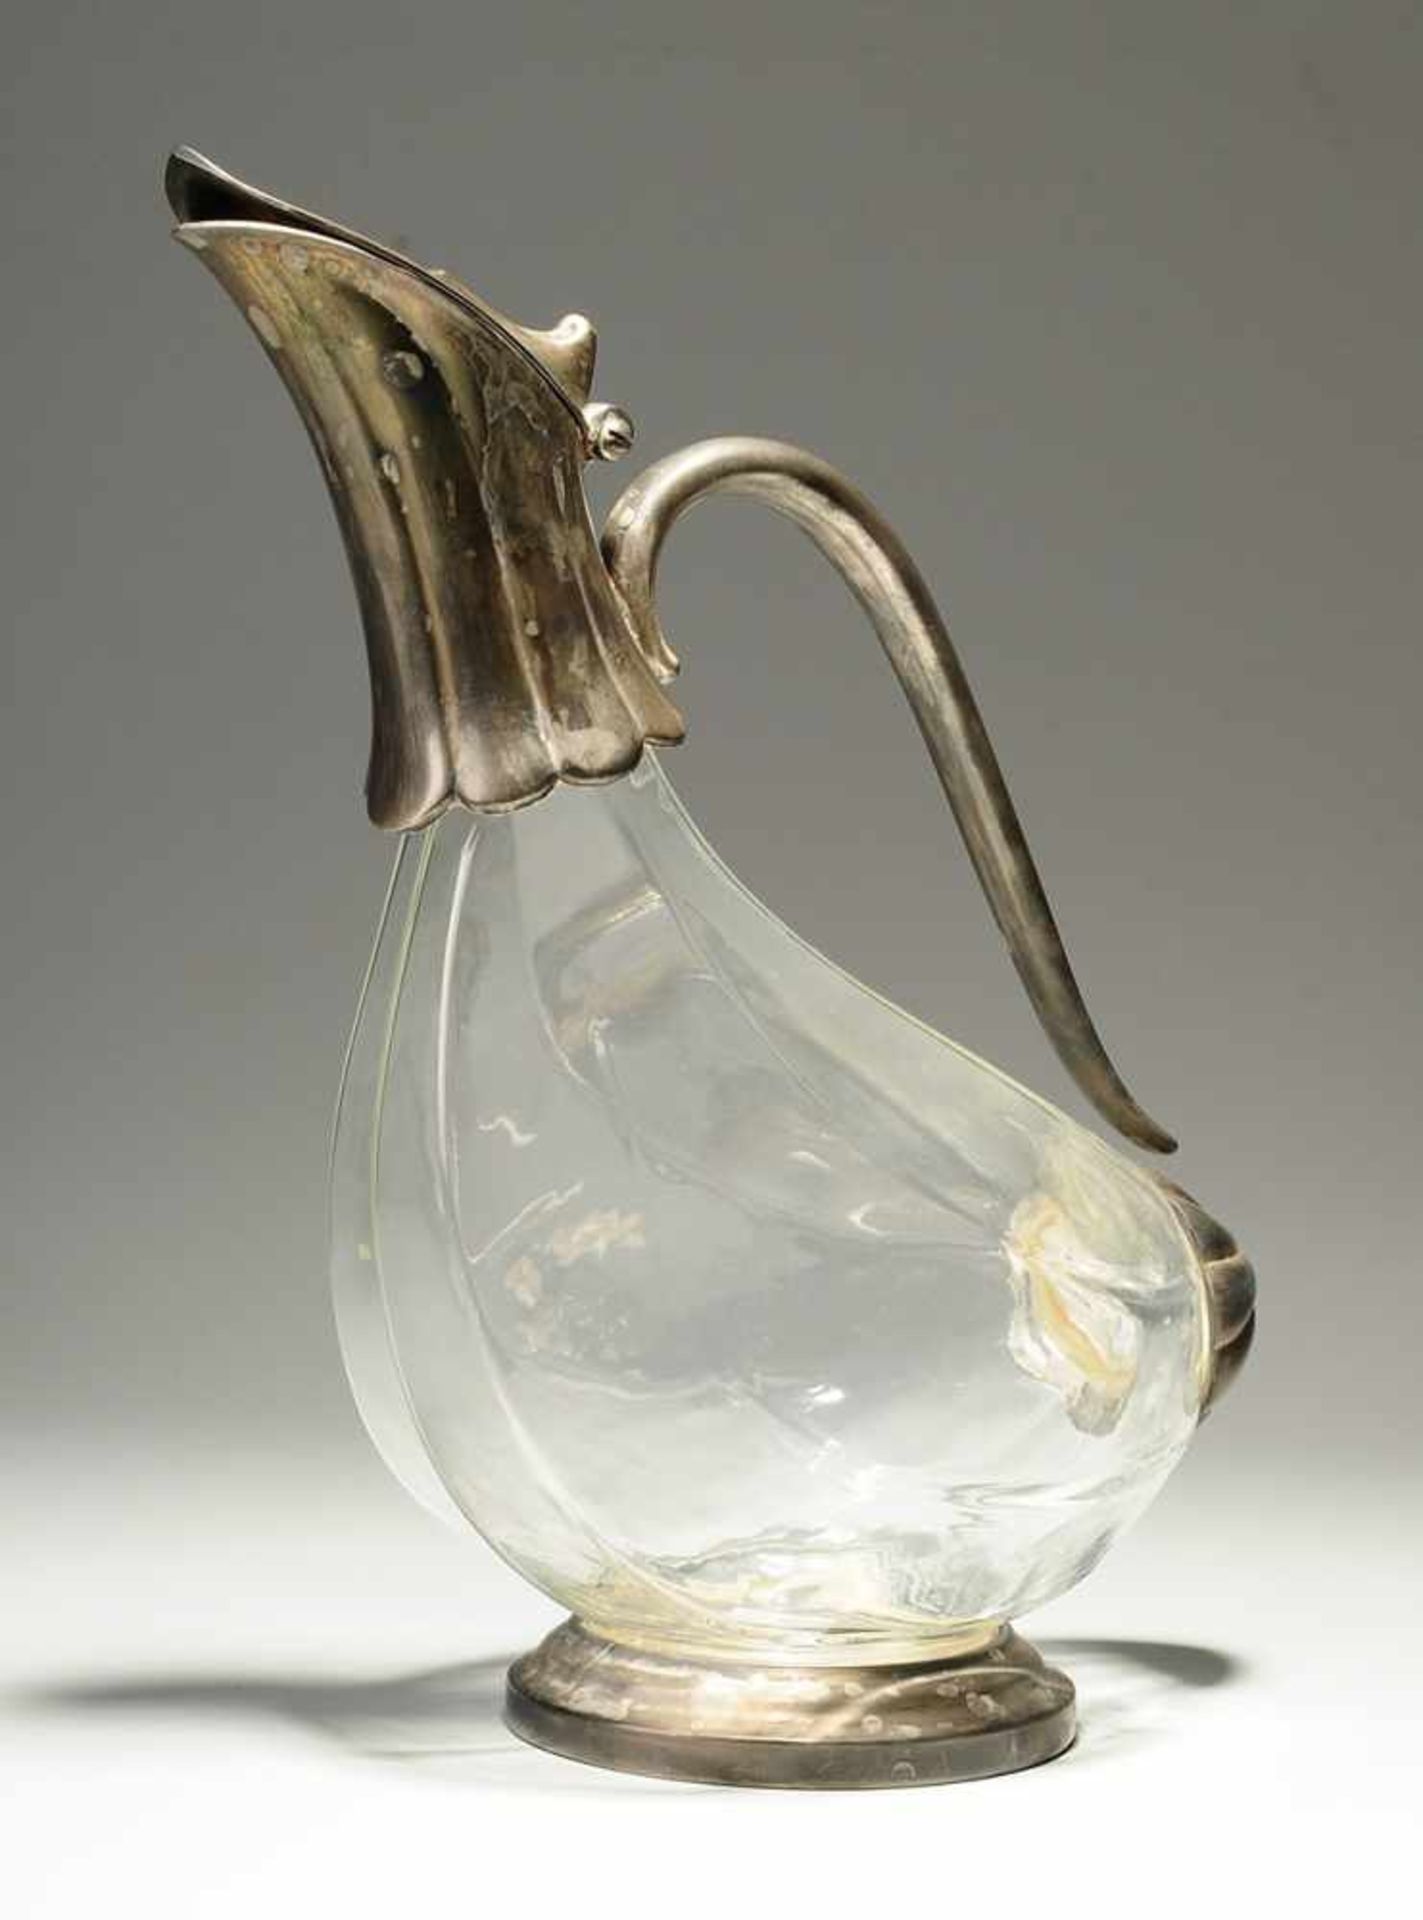 Kanne Farbloses Glas. Formgeblasen. In Form einer Ente. Standring, Griff u. Mündung mit scharniertem